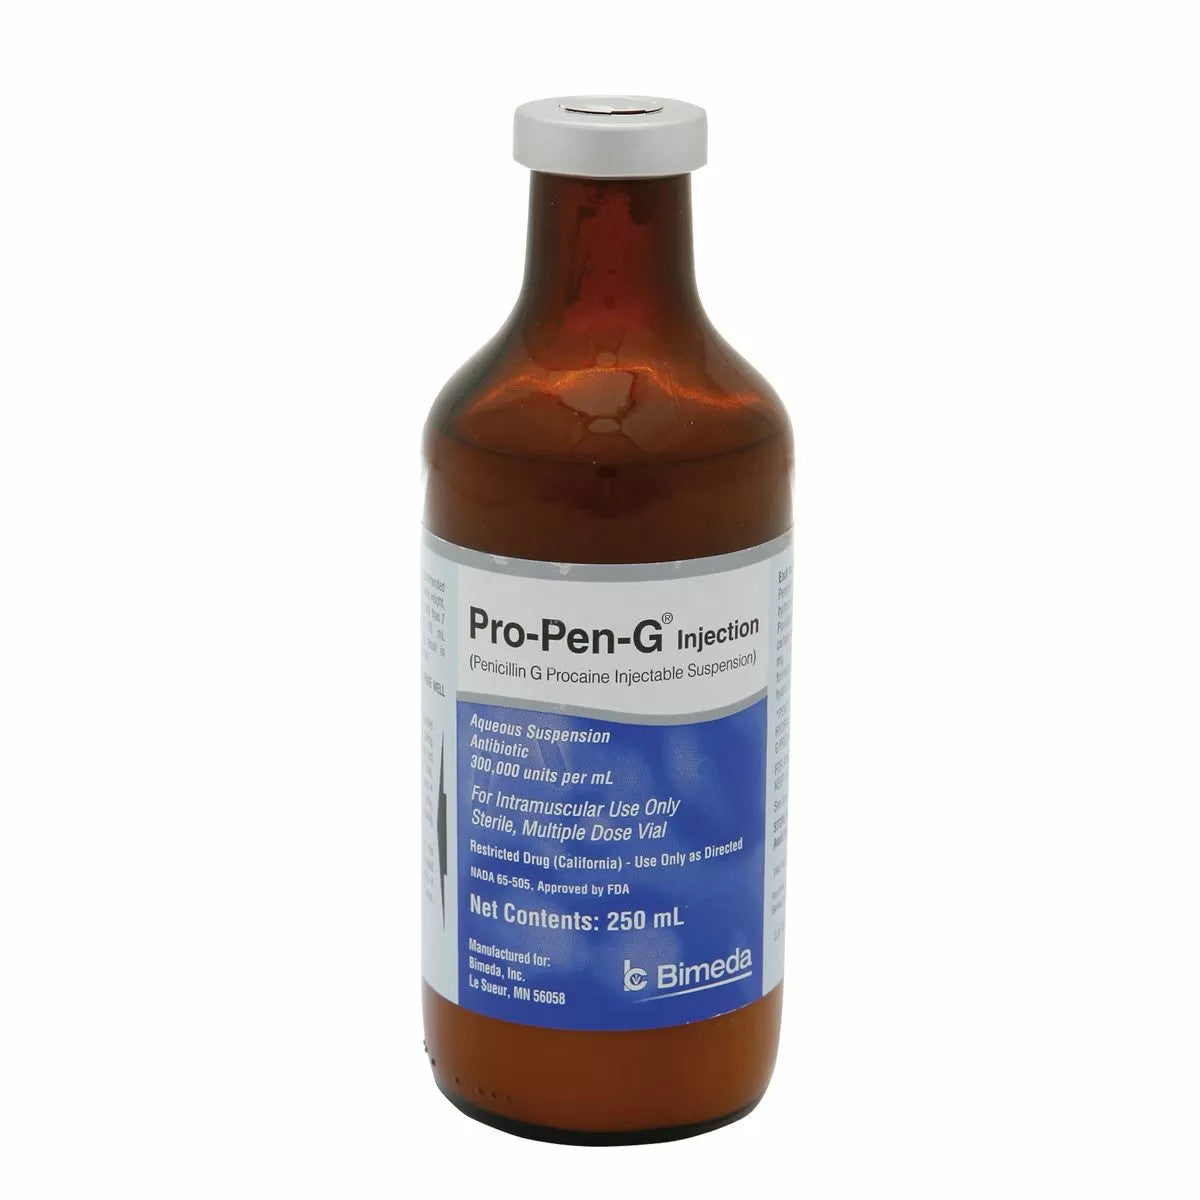 Pro-Pen G (Penicillin) Injection - Prescription Required